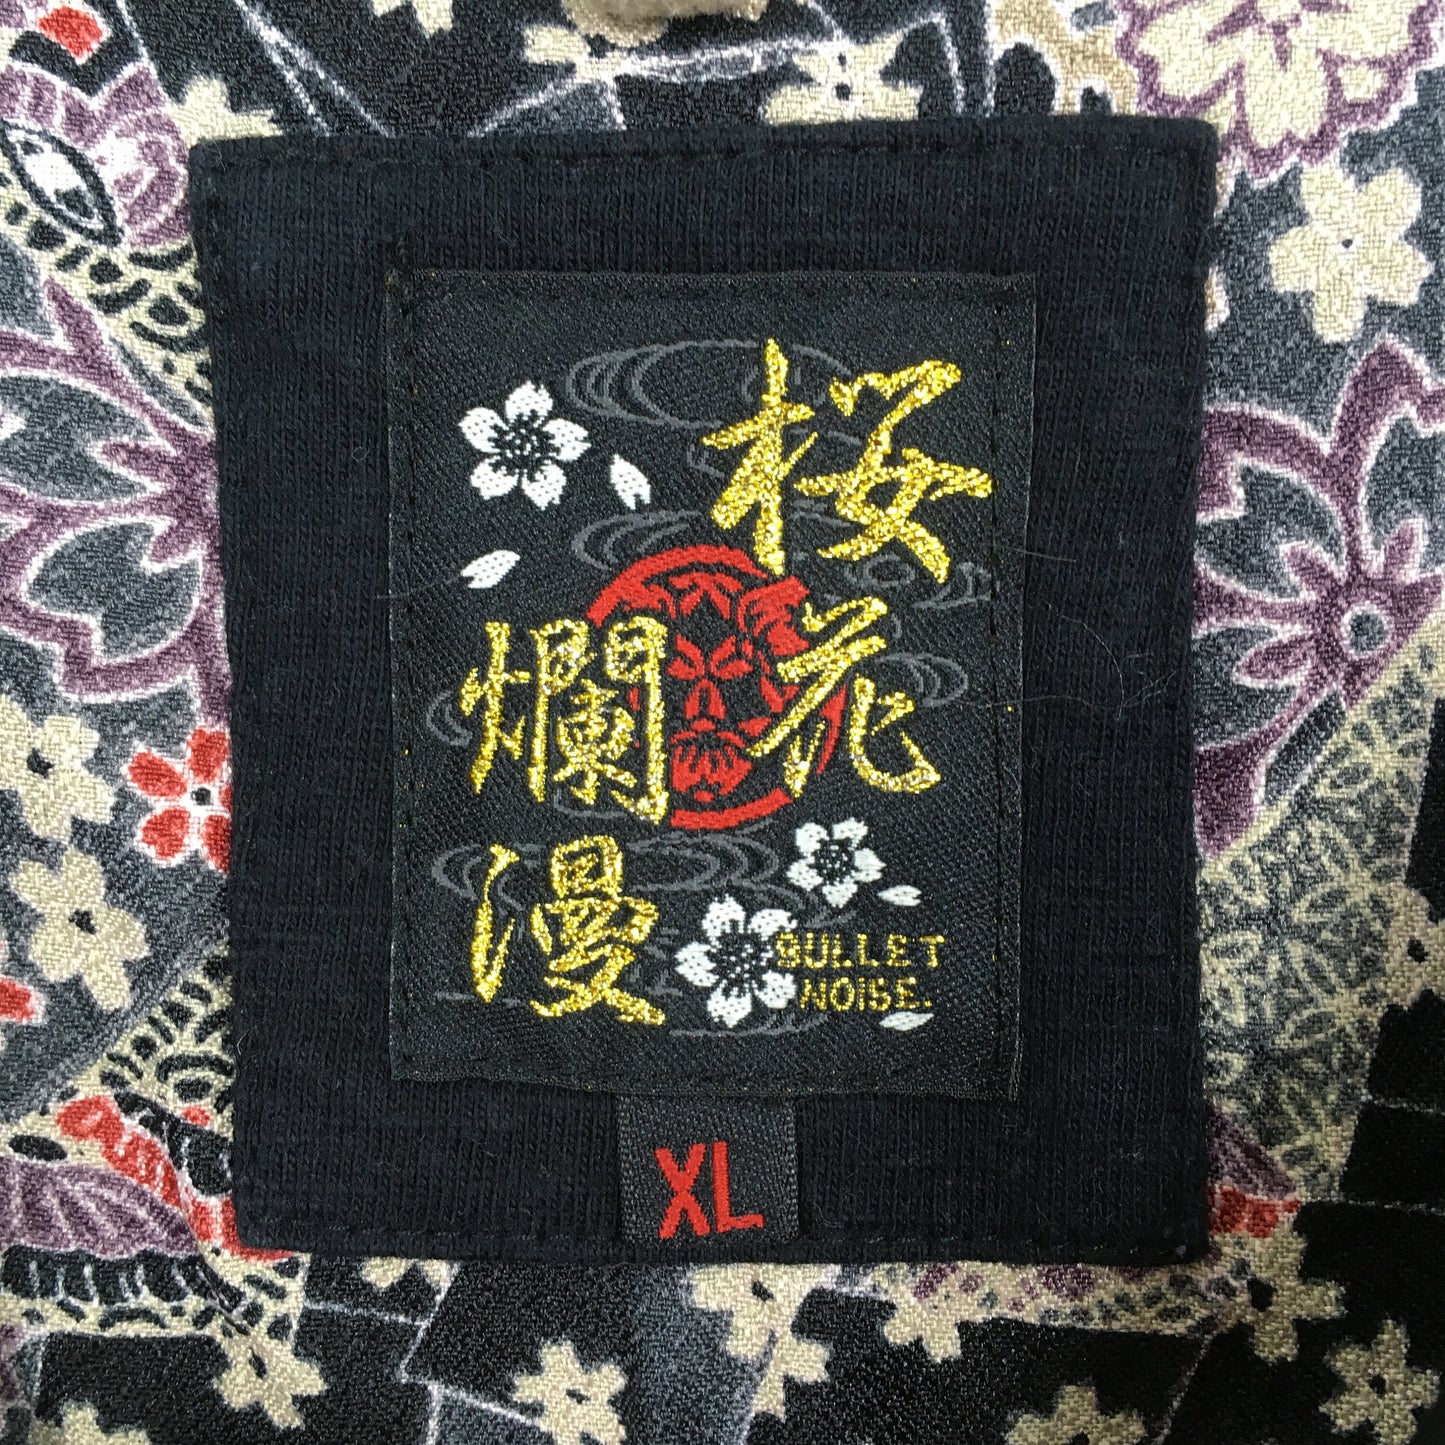 Fish Koi Japanese Sukajan Black T shirt XLarge